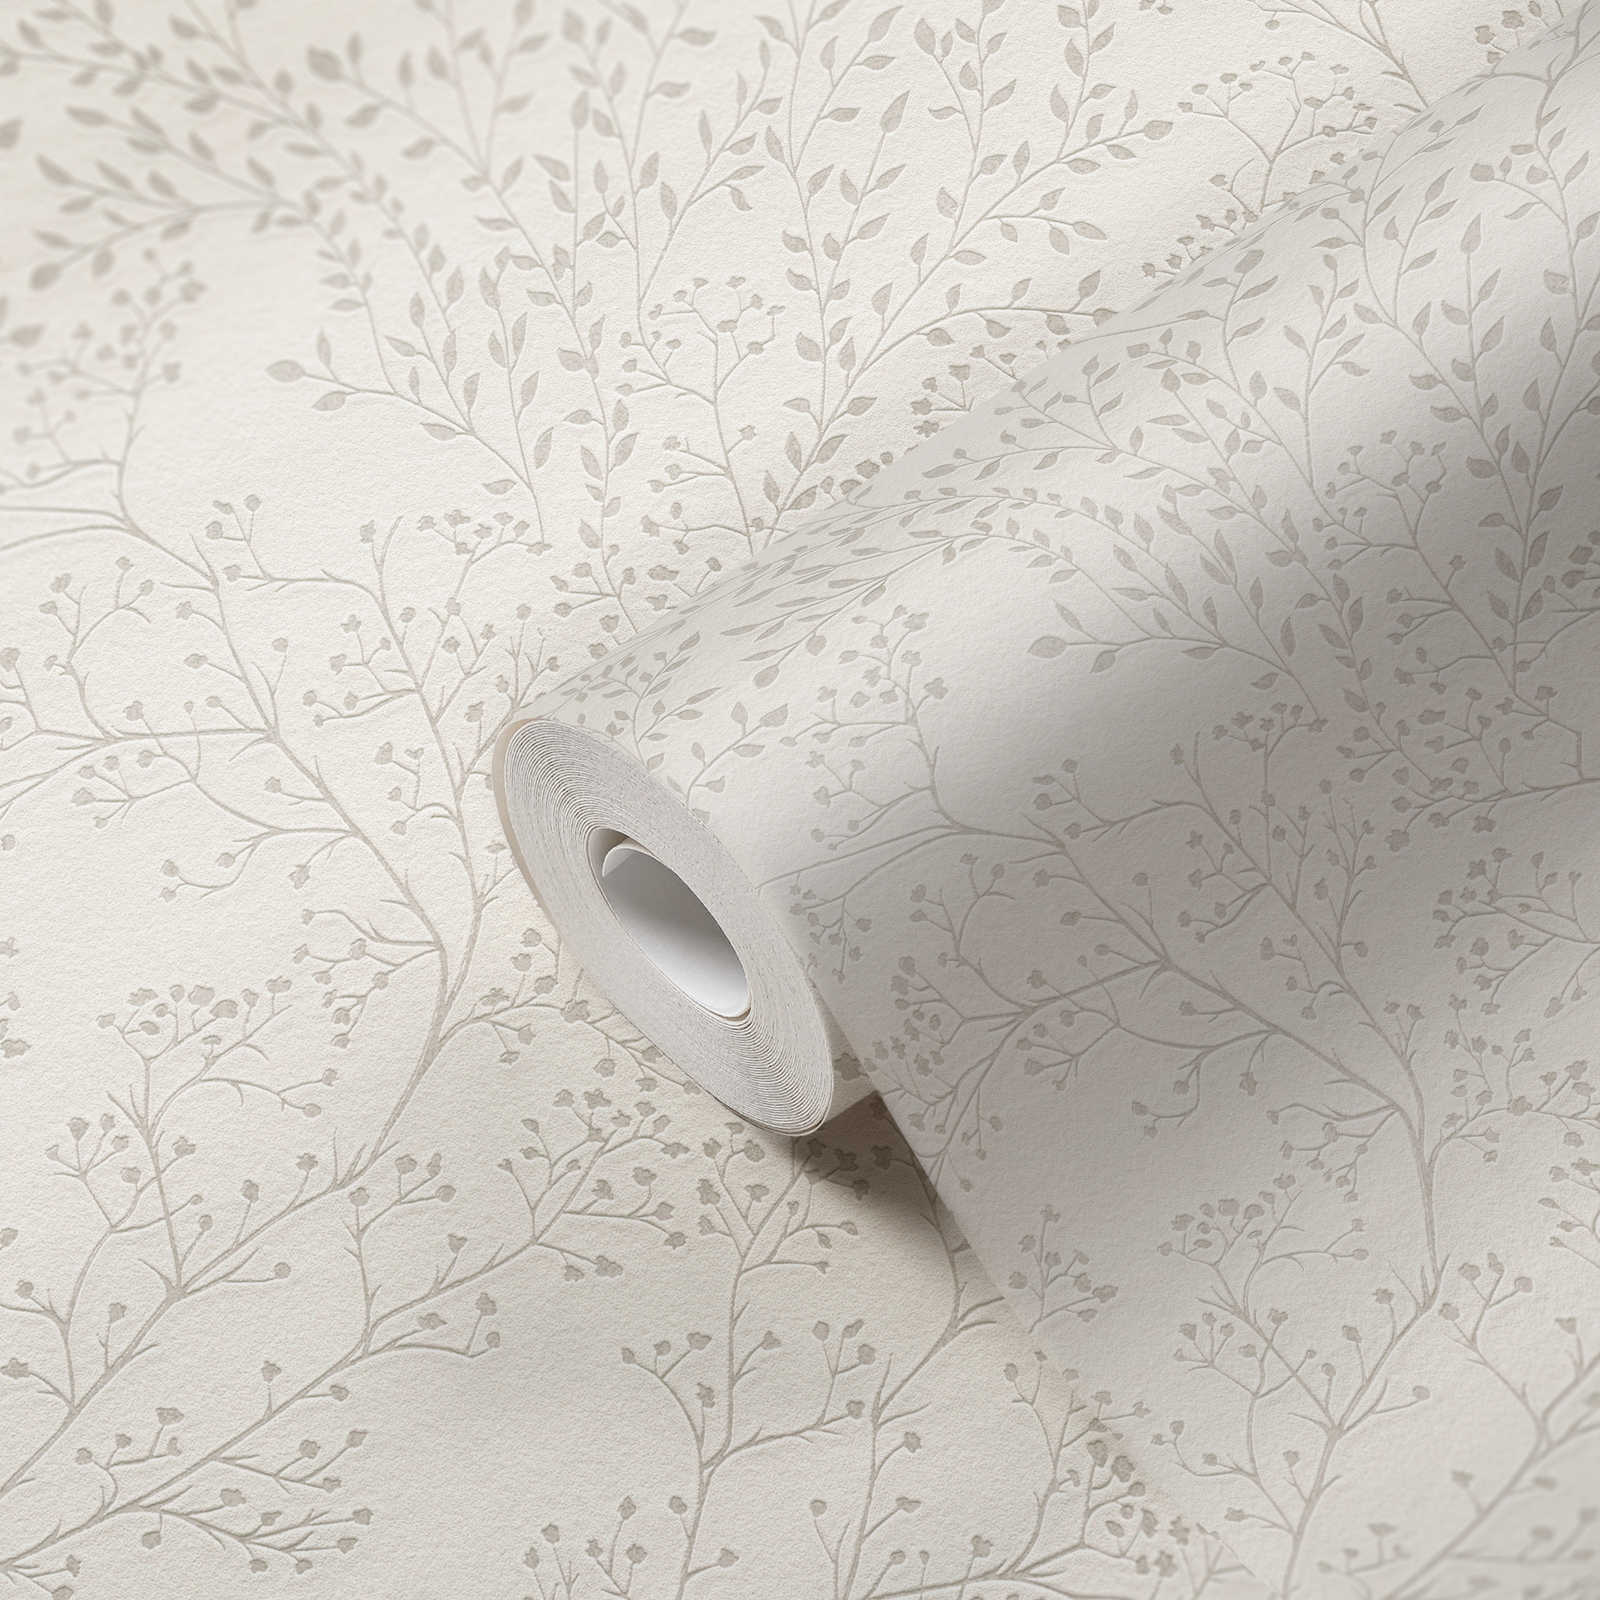             Effen behang crème wit met bladeren patroon, glans & textuur effect
        